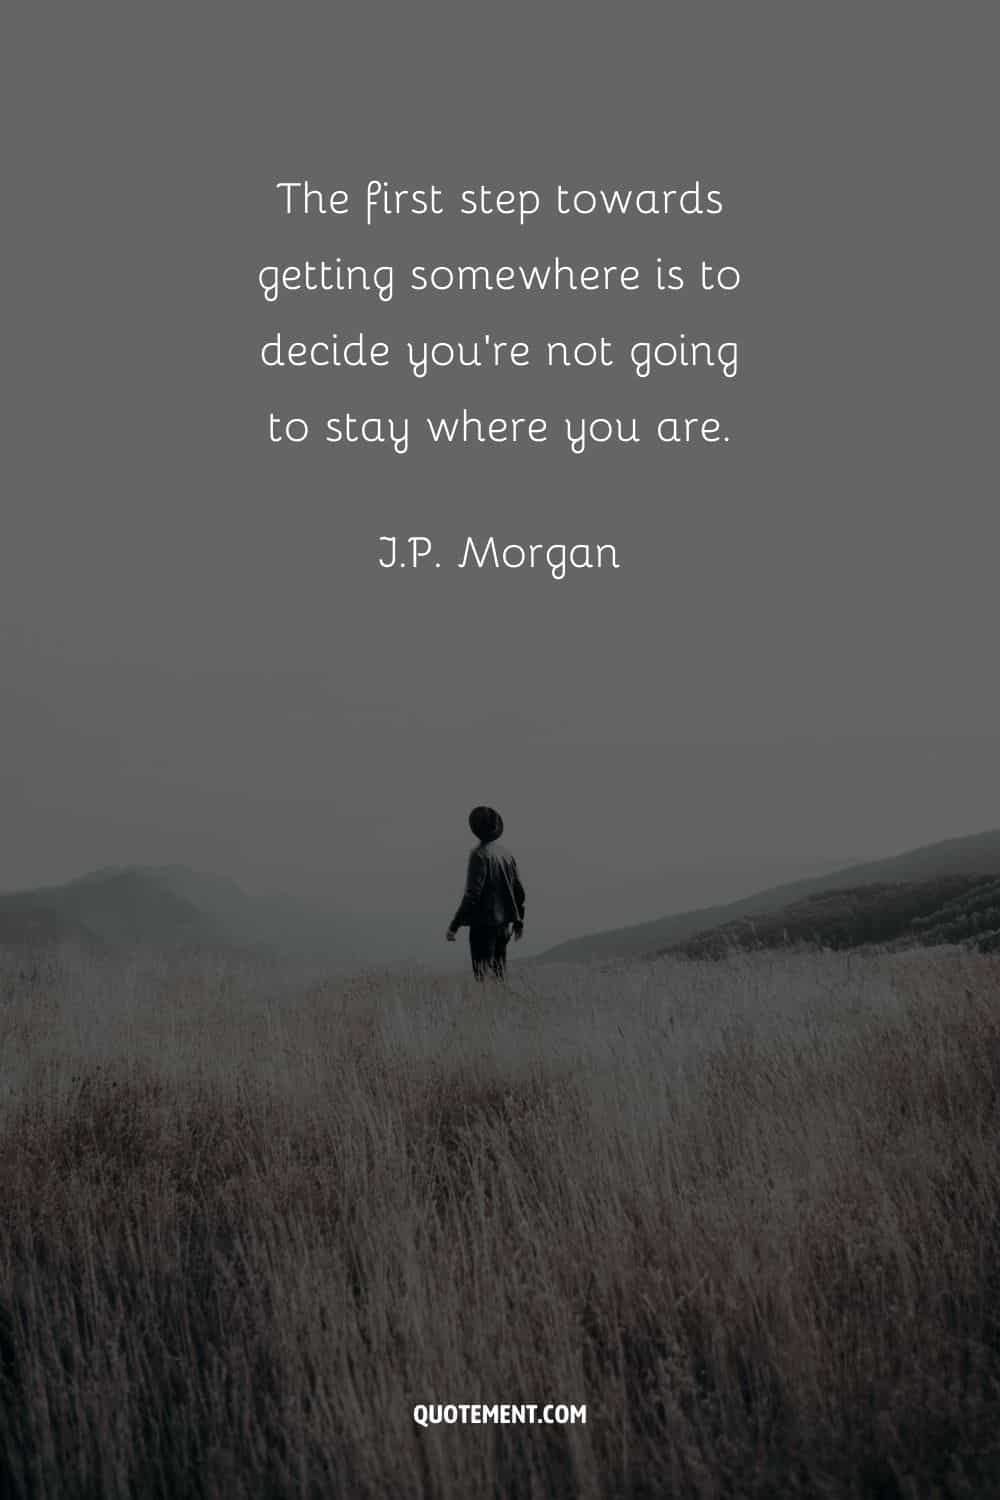 "El primer paso para llegar a alguna parte es decidir que no vas a quedarte donde estás". - J.P. Morgan